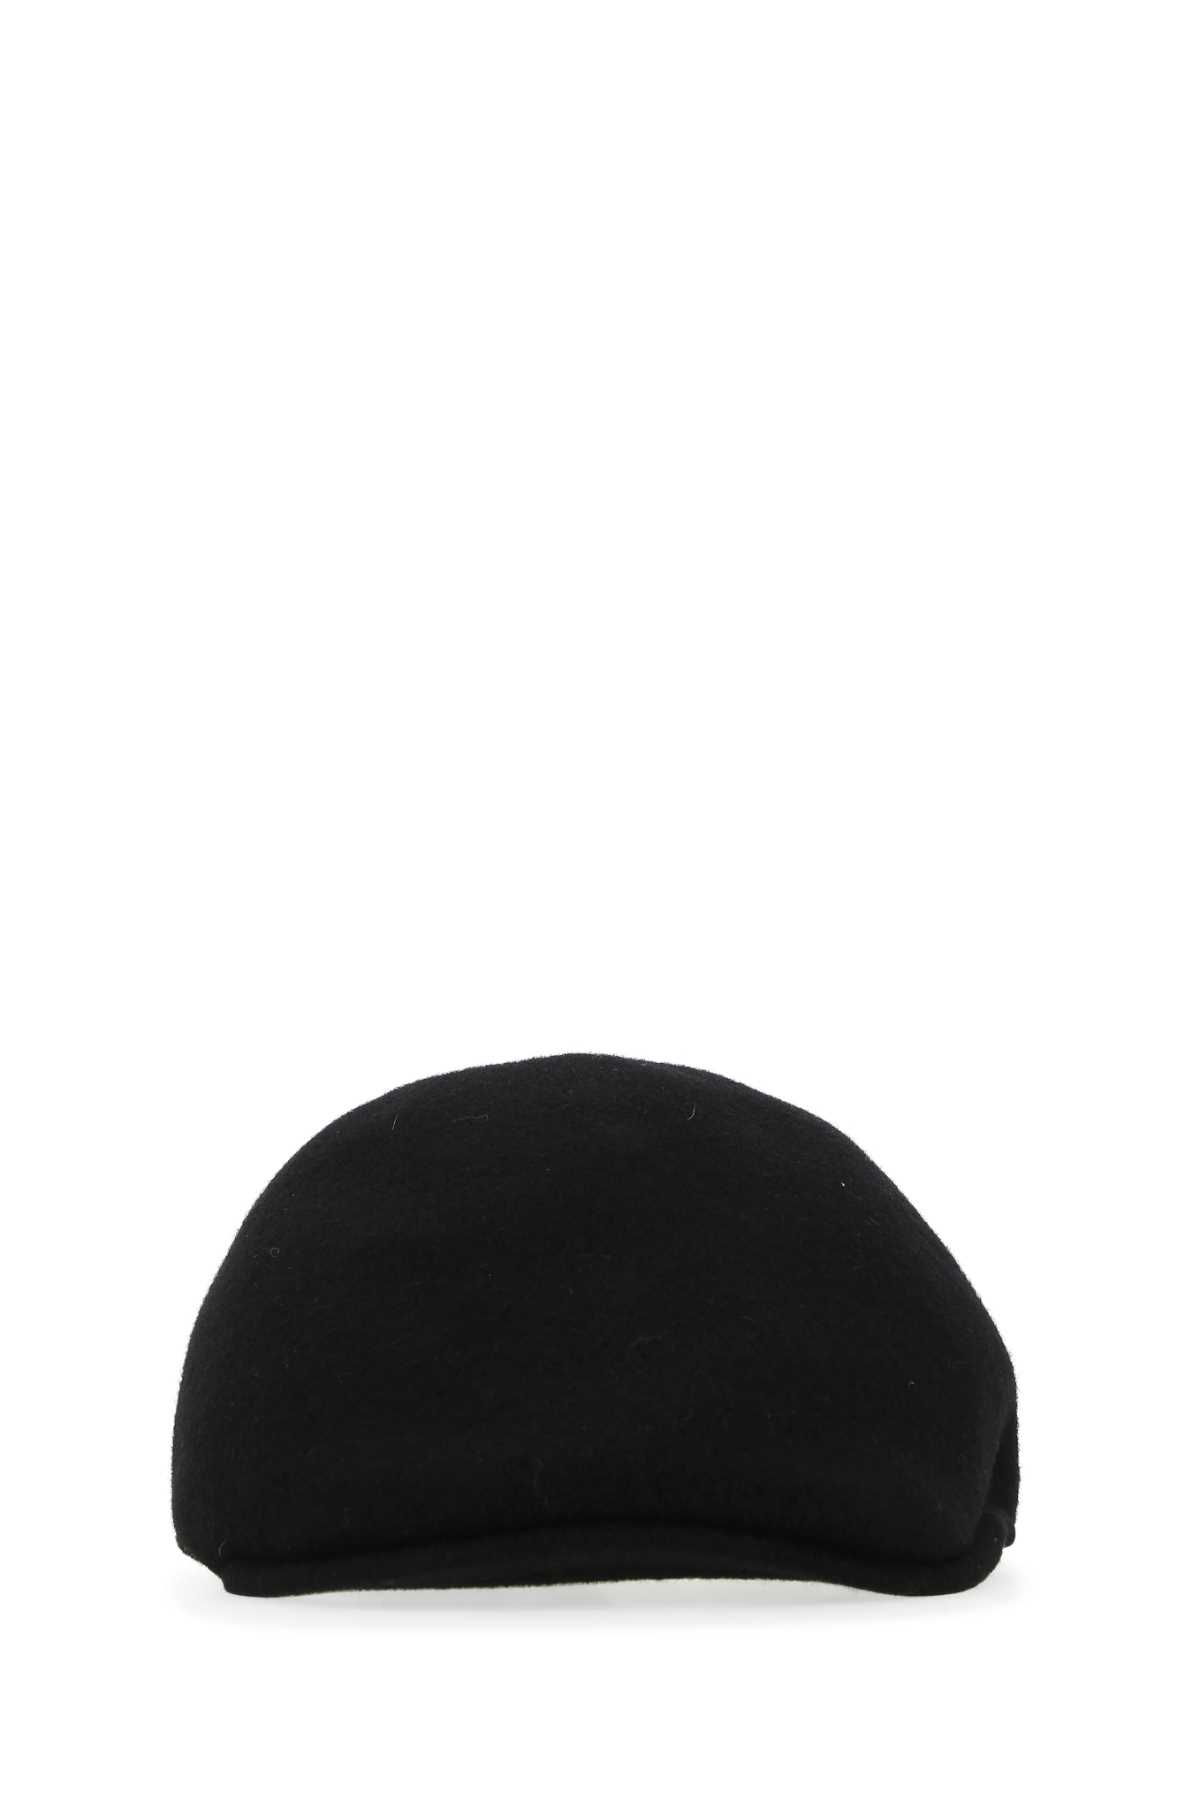 Black Felt Baker Boy Hat